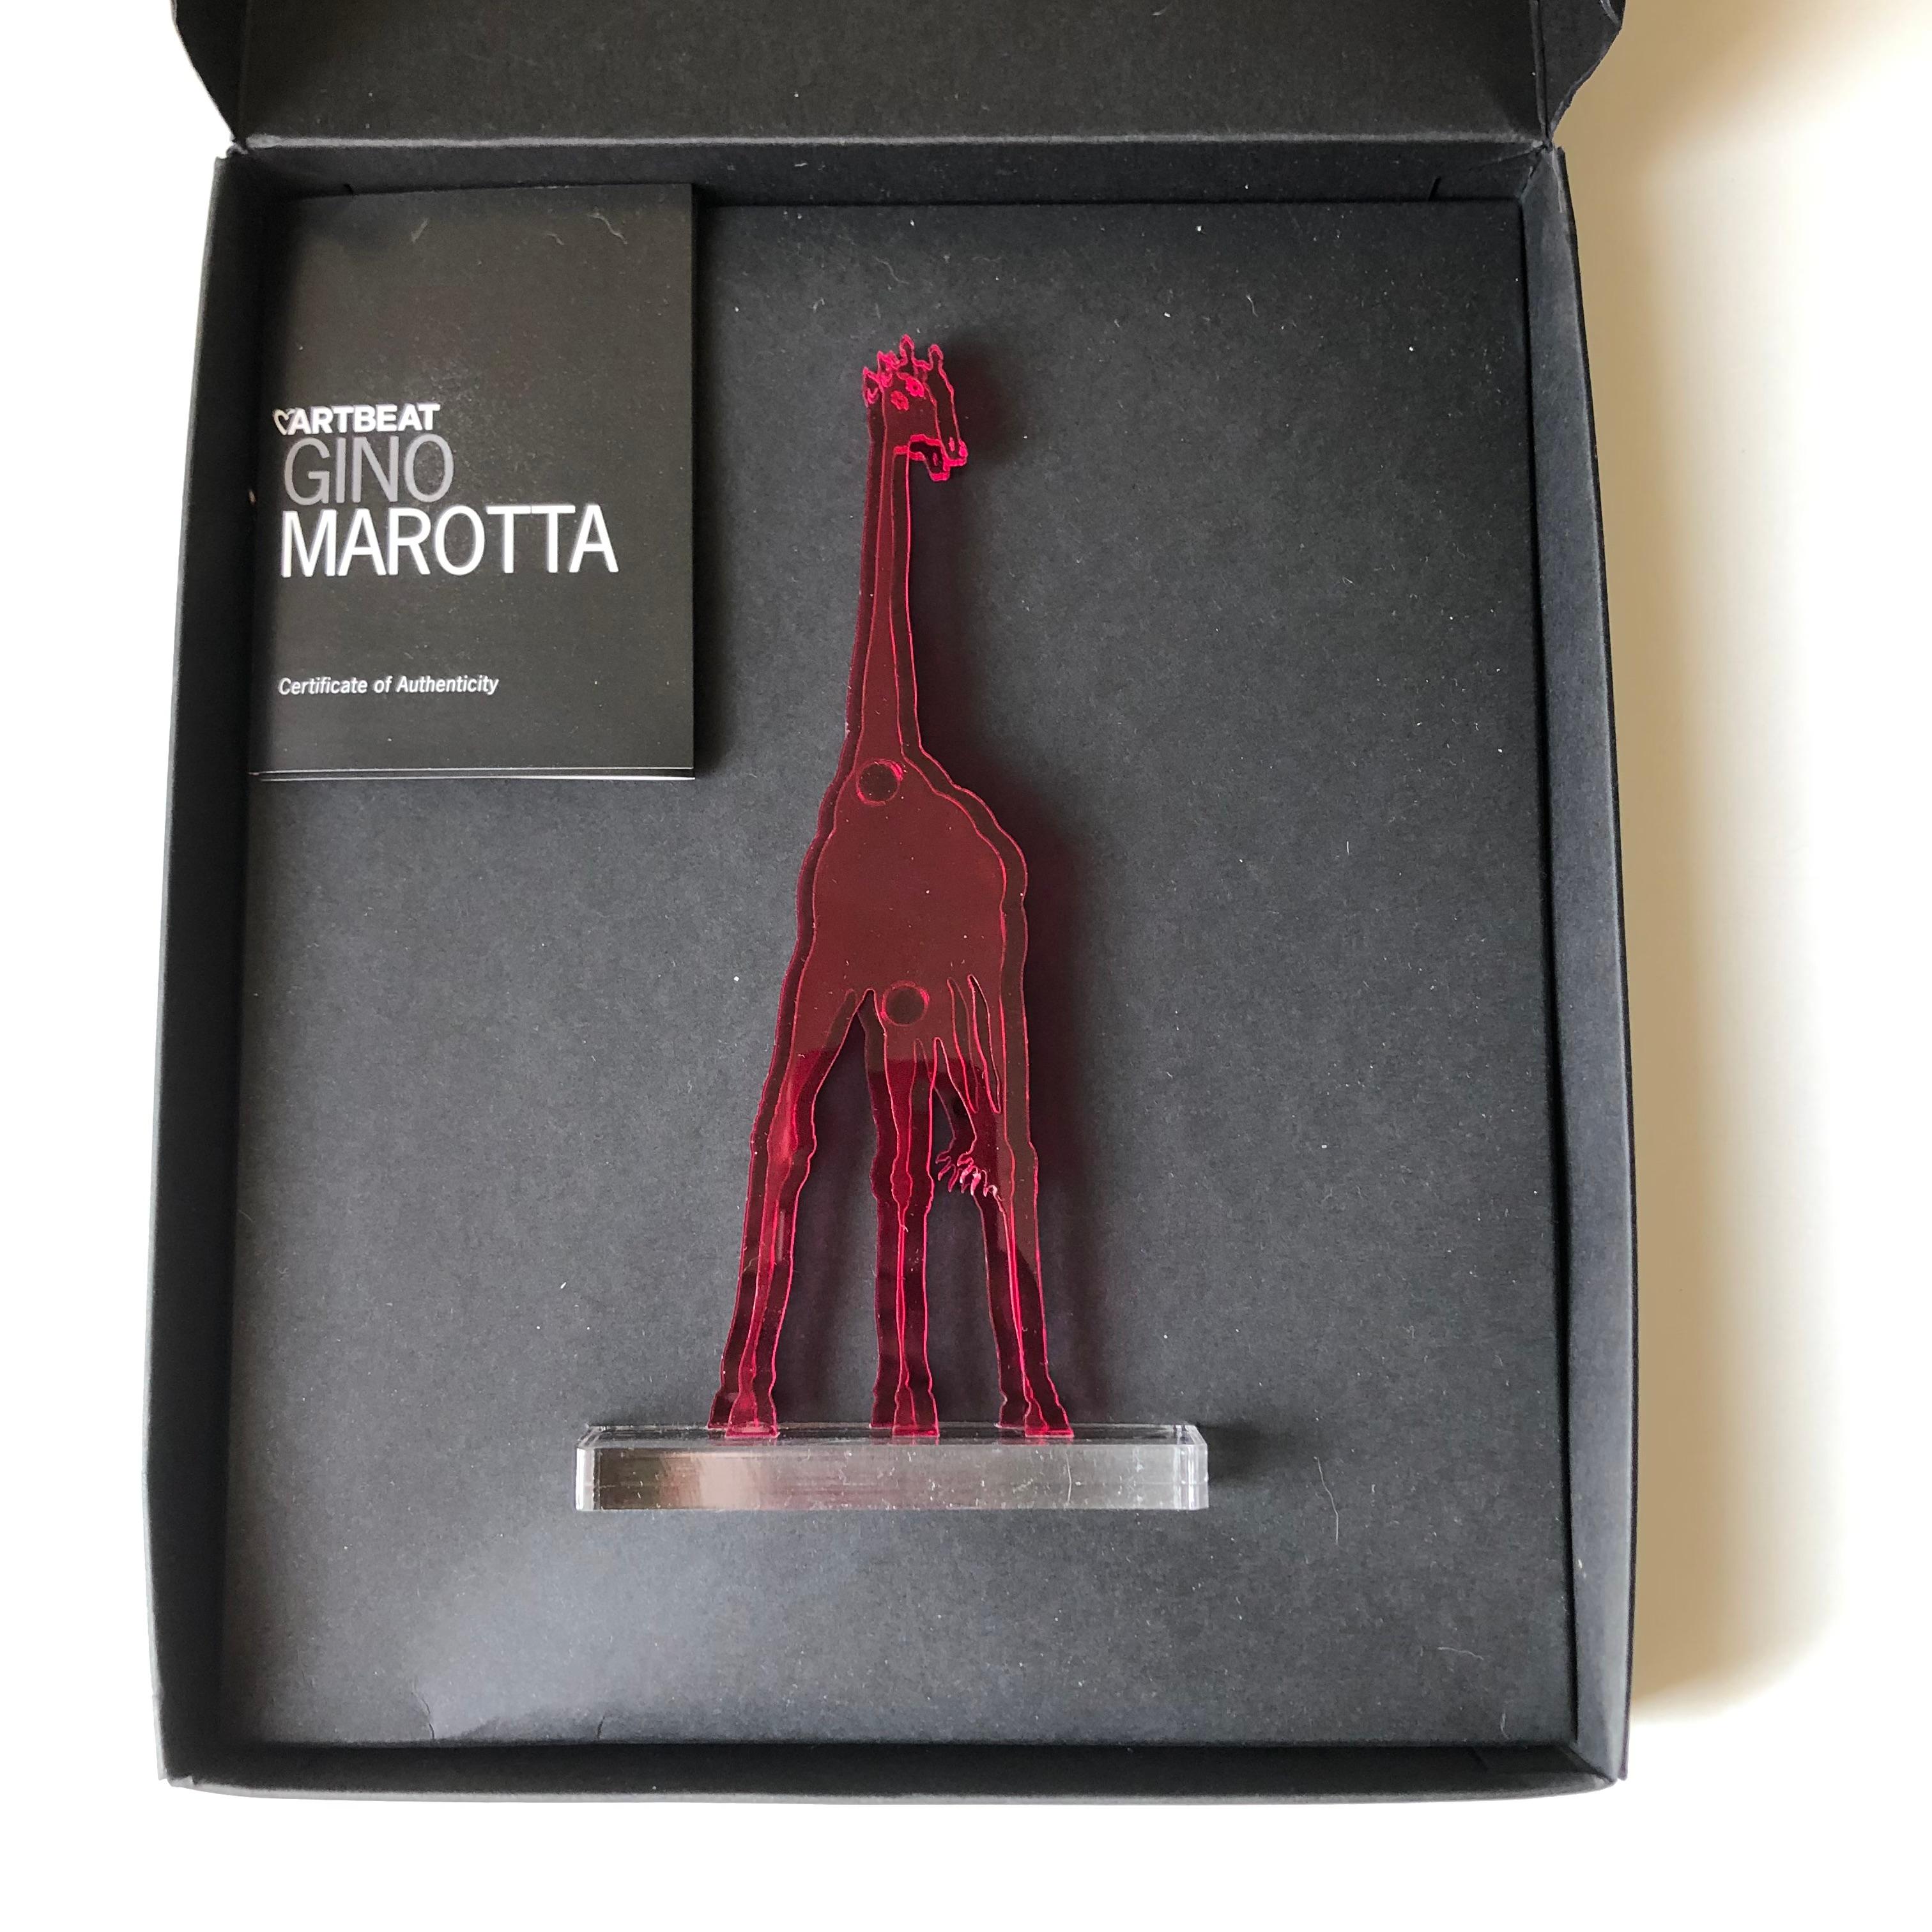 Gino MAROTTA (1935-2012)
Giraffa artificiale, 2010
Edition Artbeat arrêtée
Sculpture, multiple en méthacrylate coloré fuschia et découpé. Signé sur la base. Dans sa boite d’origine. 
Haut. : 19 cm Long. : 10 cm

Gino MAROTTA (1935-2012)
Giraffa